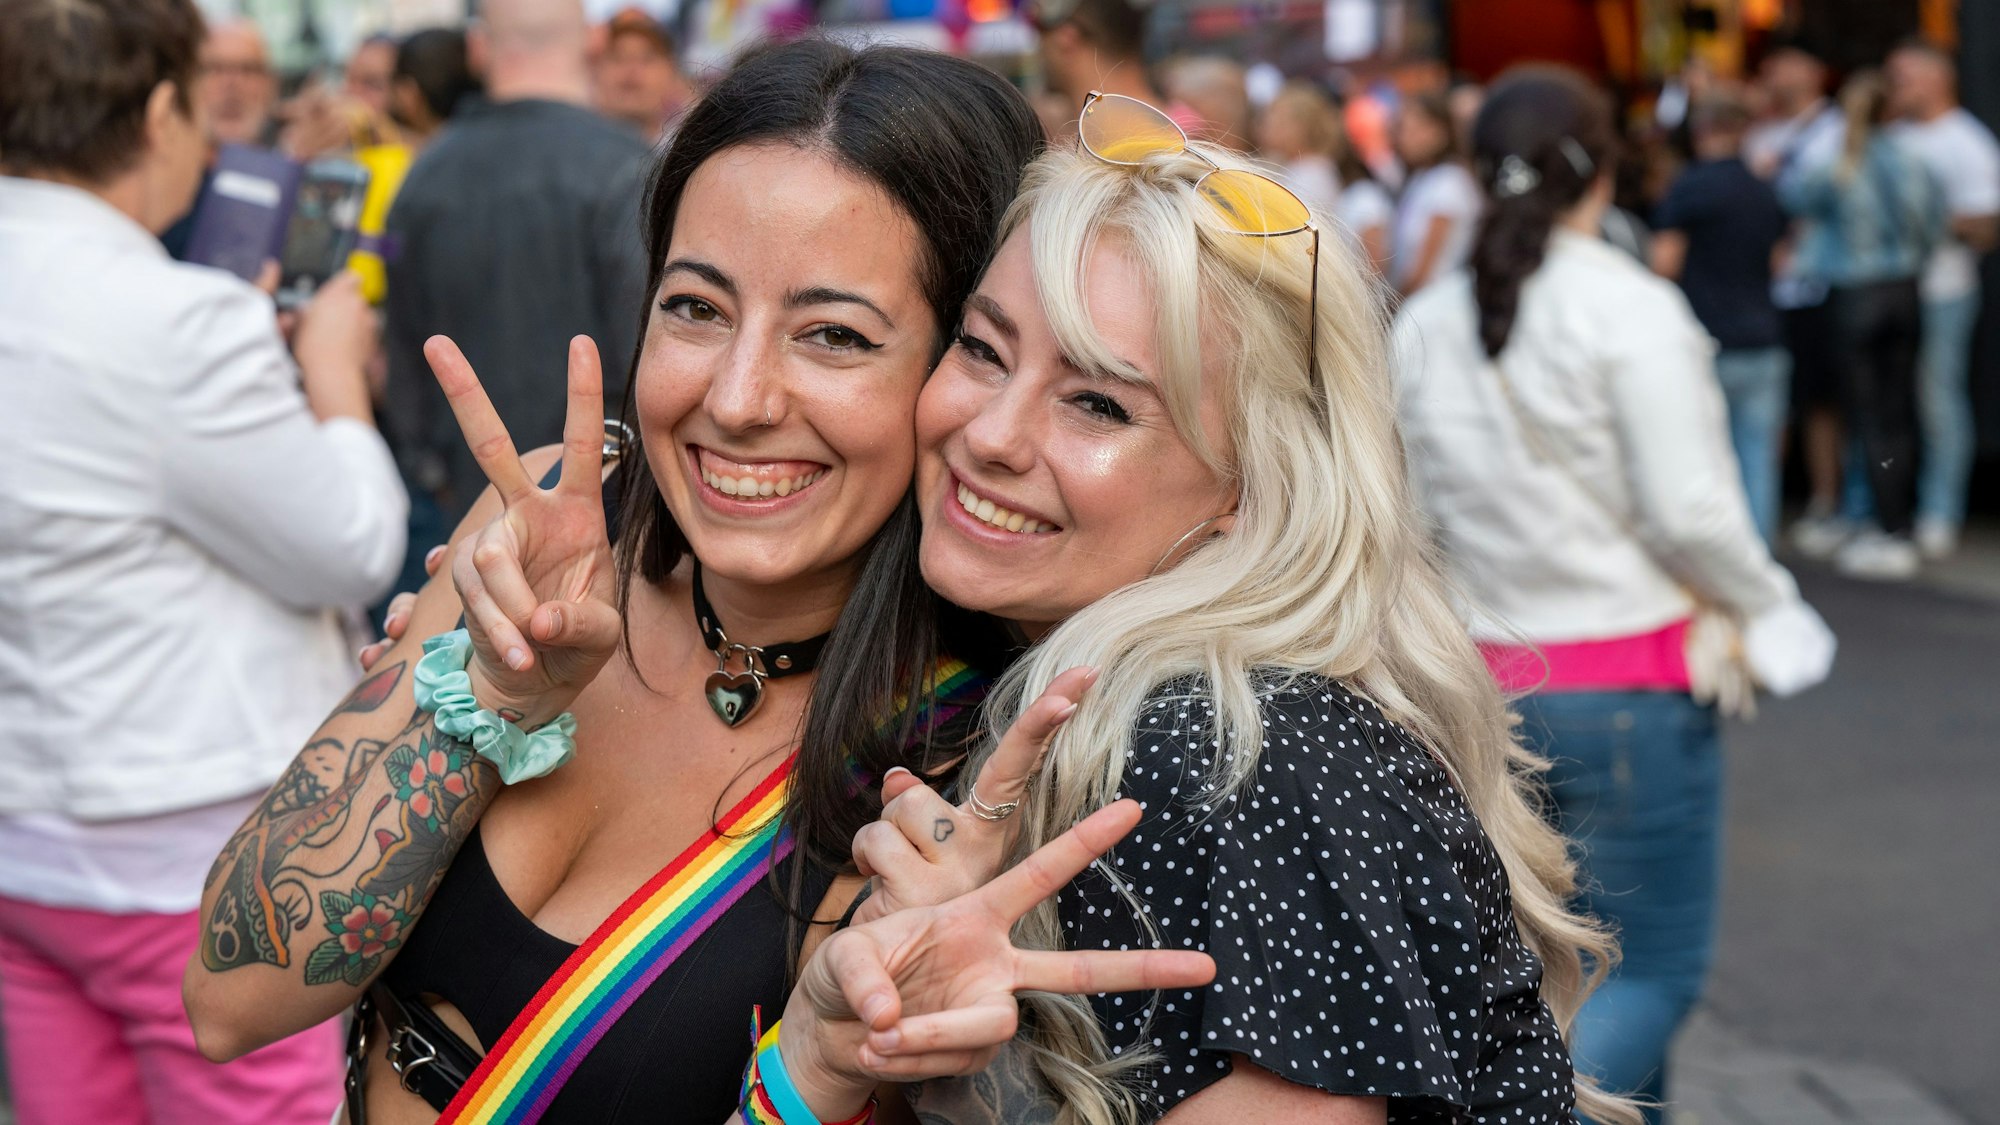 01.07.2022, Köln: ColognePride (CSD-Straßenfest) am Gürzenich. Foto: Uwe Weiser